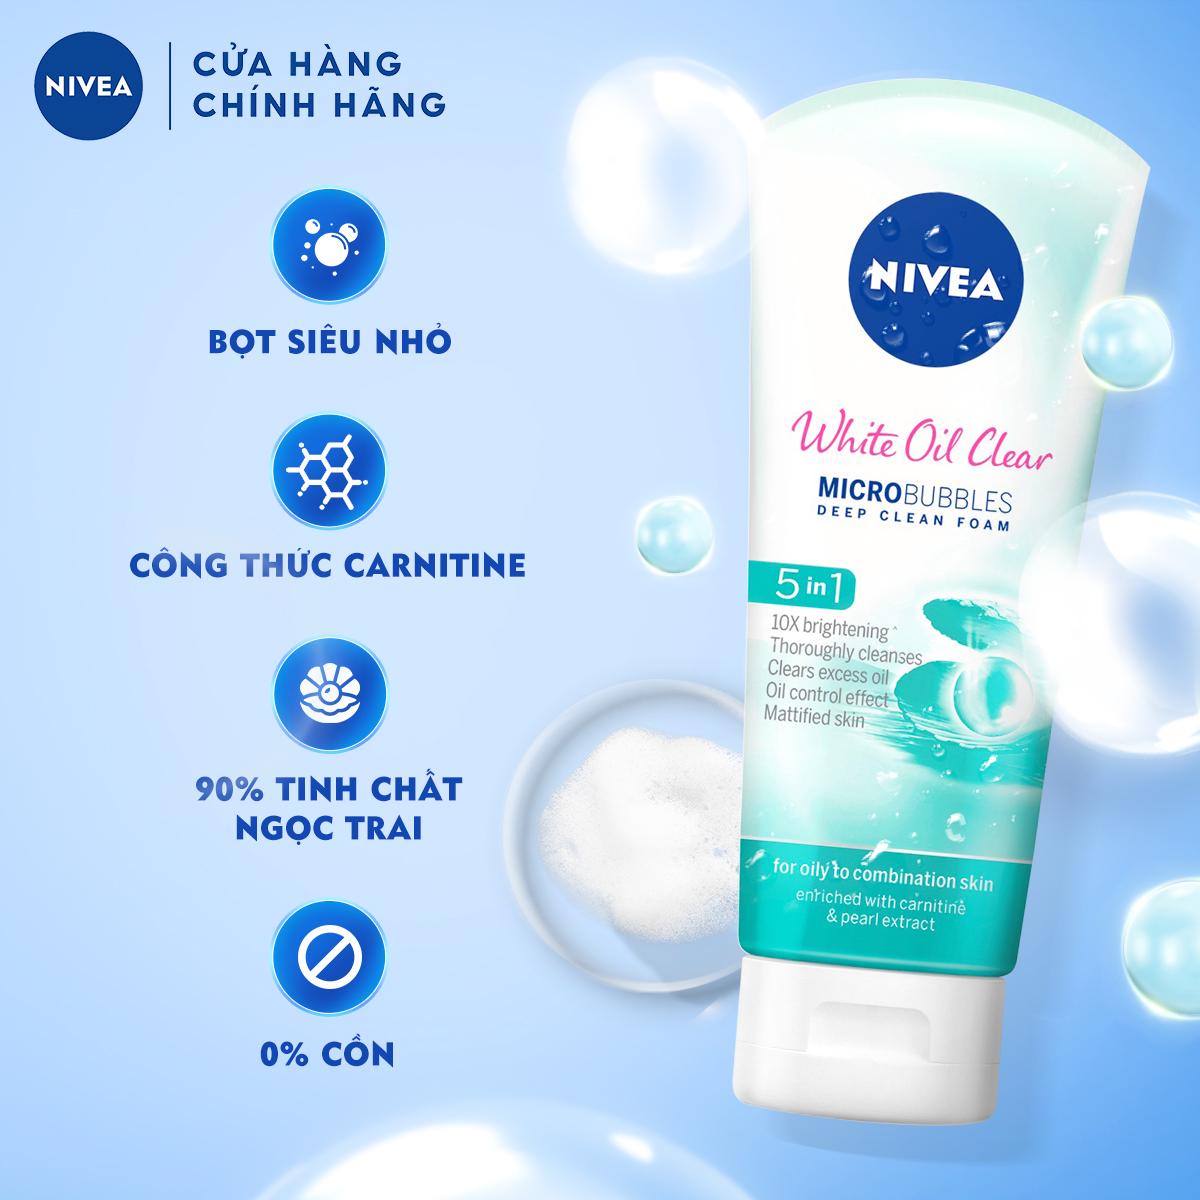 Sữa rửa mặt NIVEA White Oil Clear giúp trắng da sạch nhờn (100g) – 84951